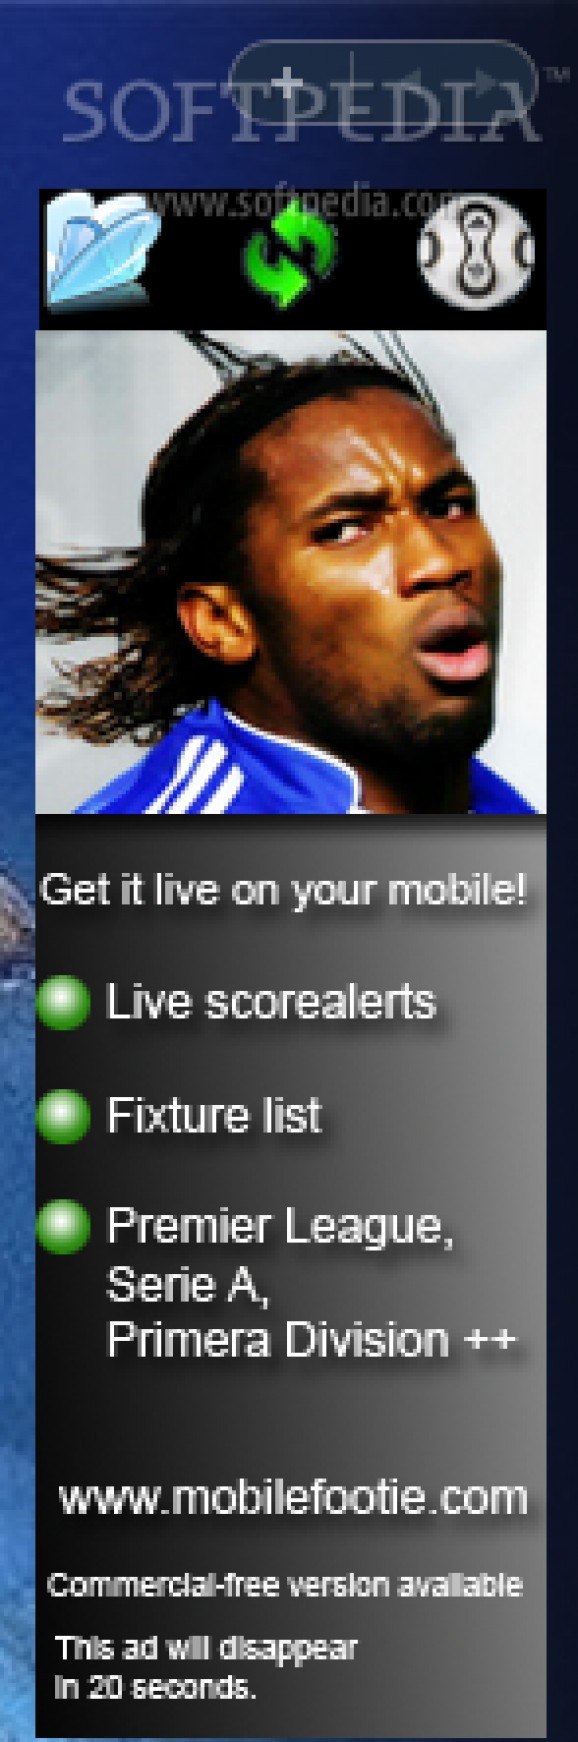 MobileFootie screenshot